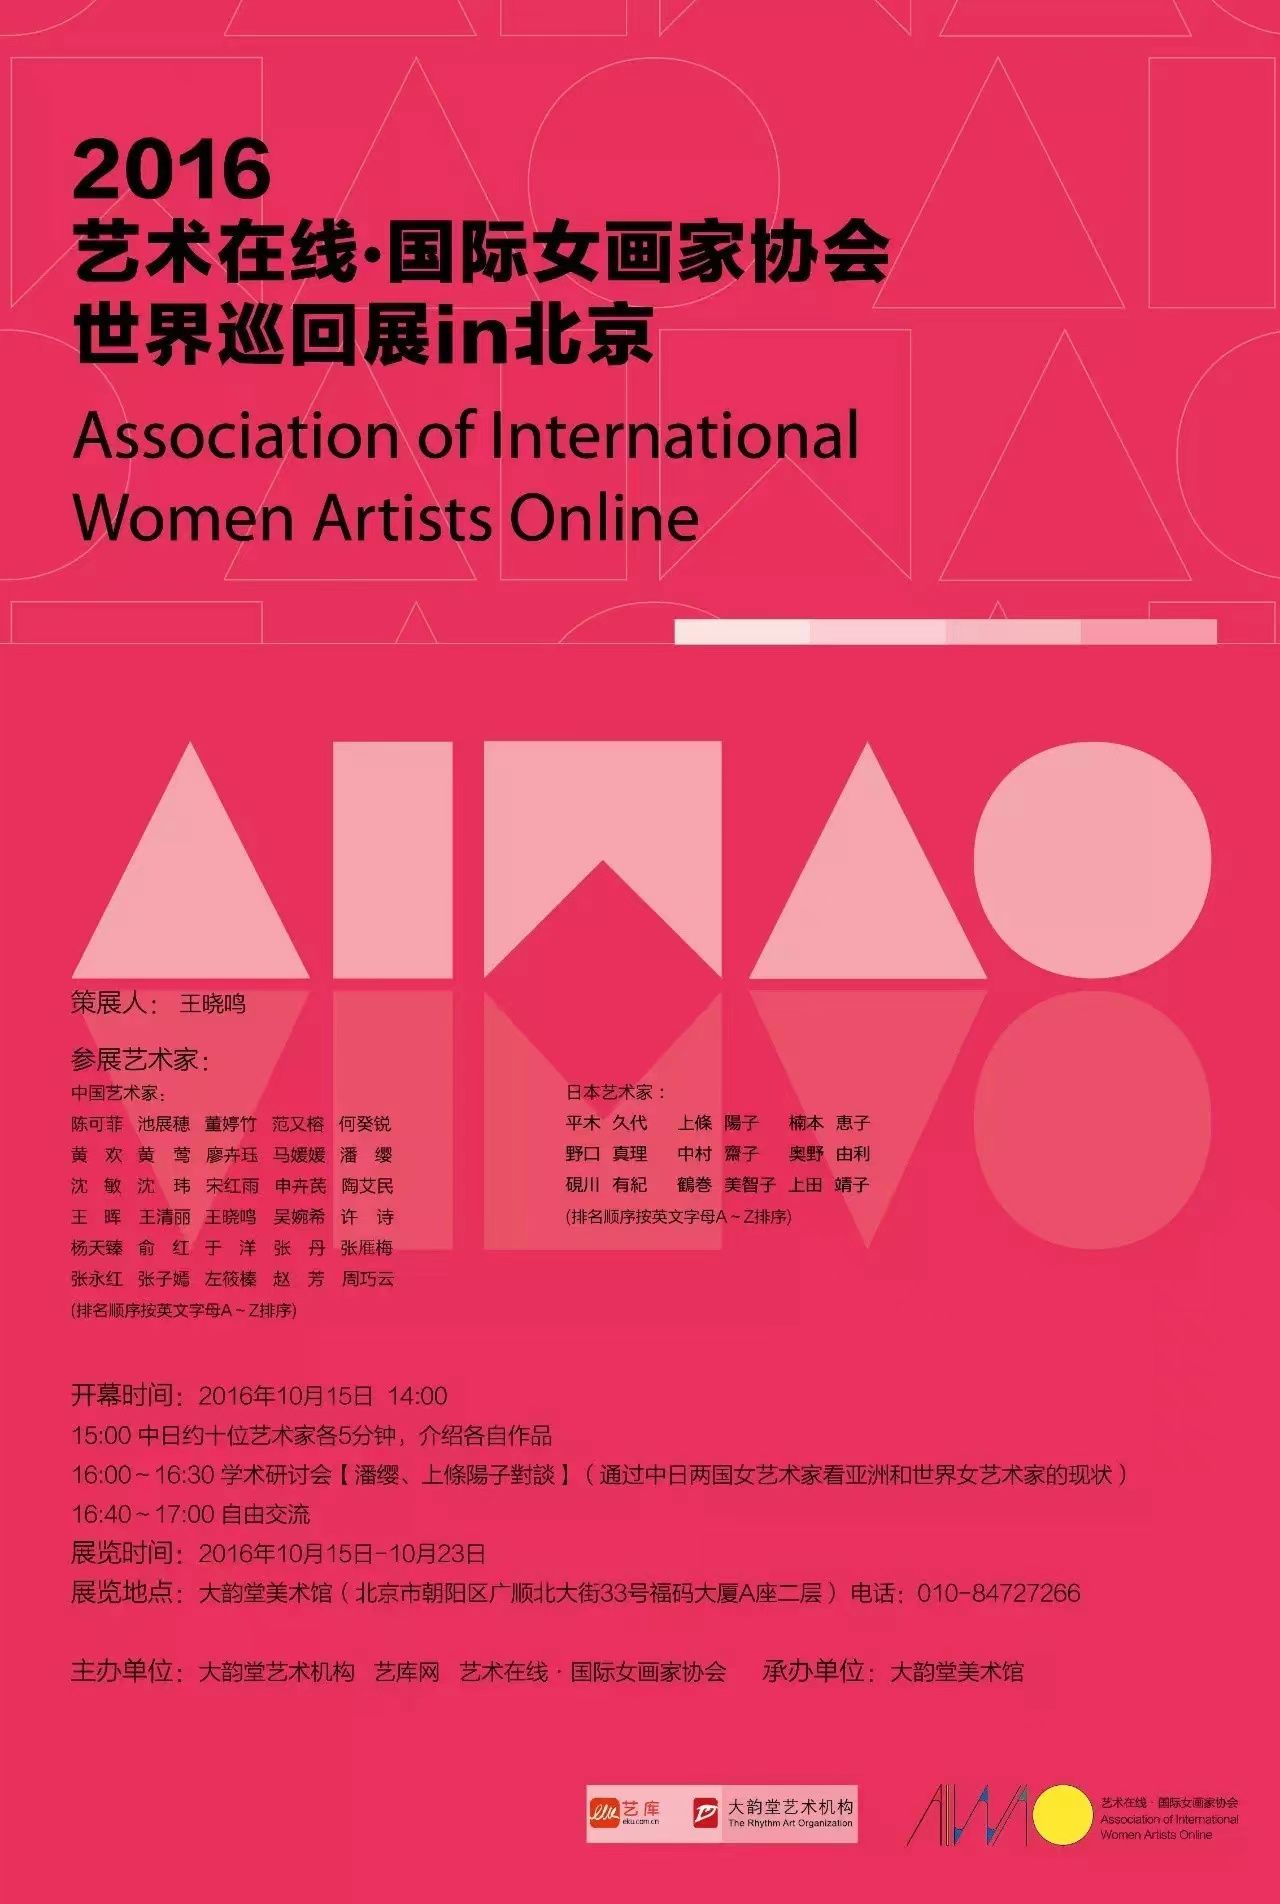 2016年 艺术在线·国际女画家协会 世界巡回展in北京